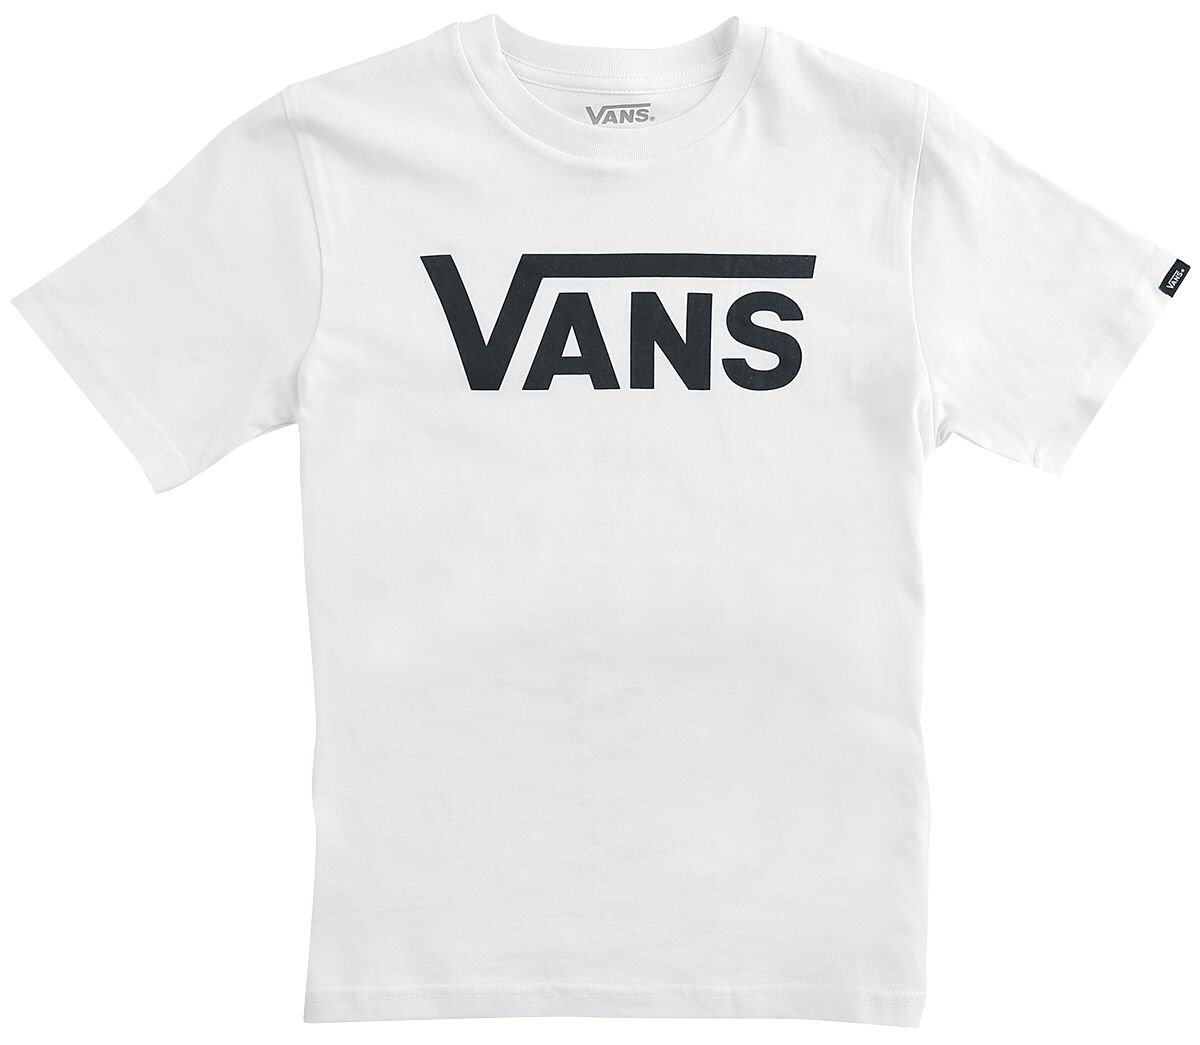 T-shirt de Vans - By VANS Classic Tee - S à XL - pour filles & garçonse - blanc